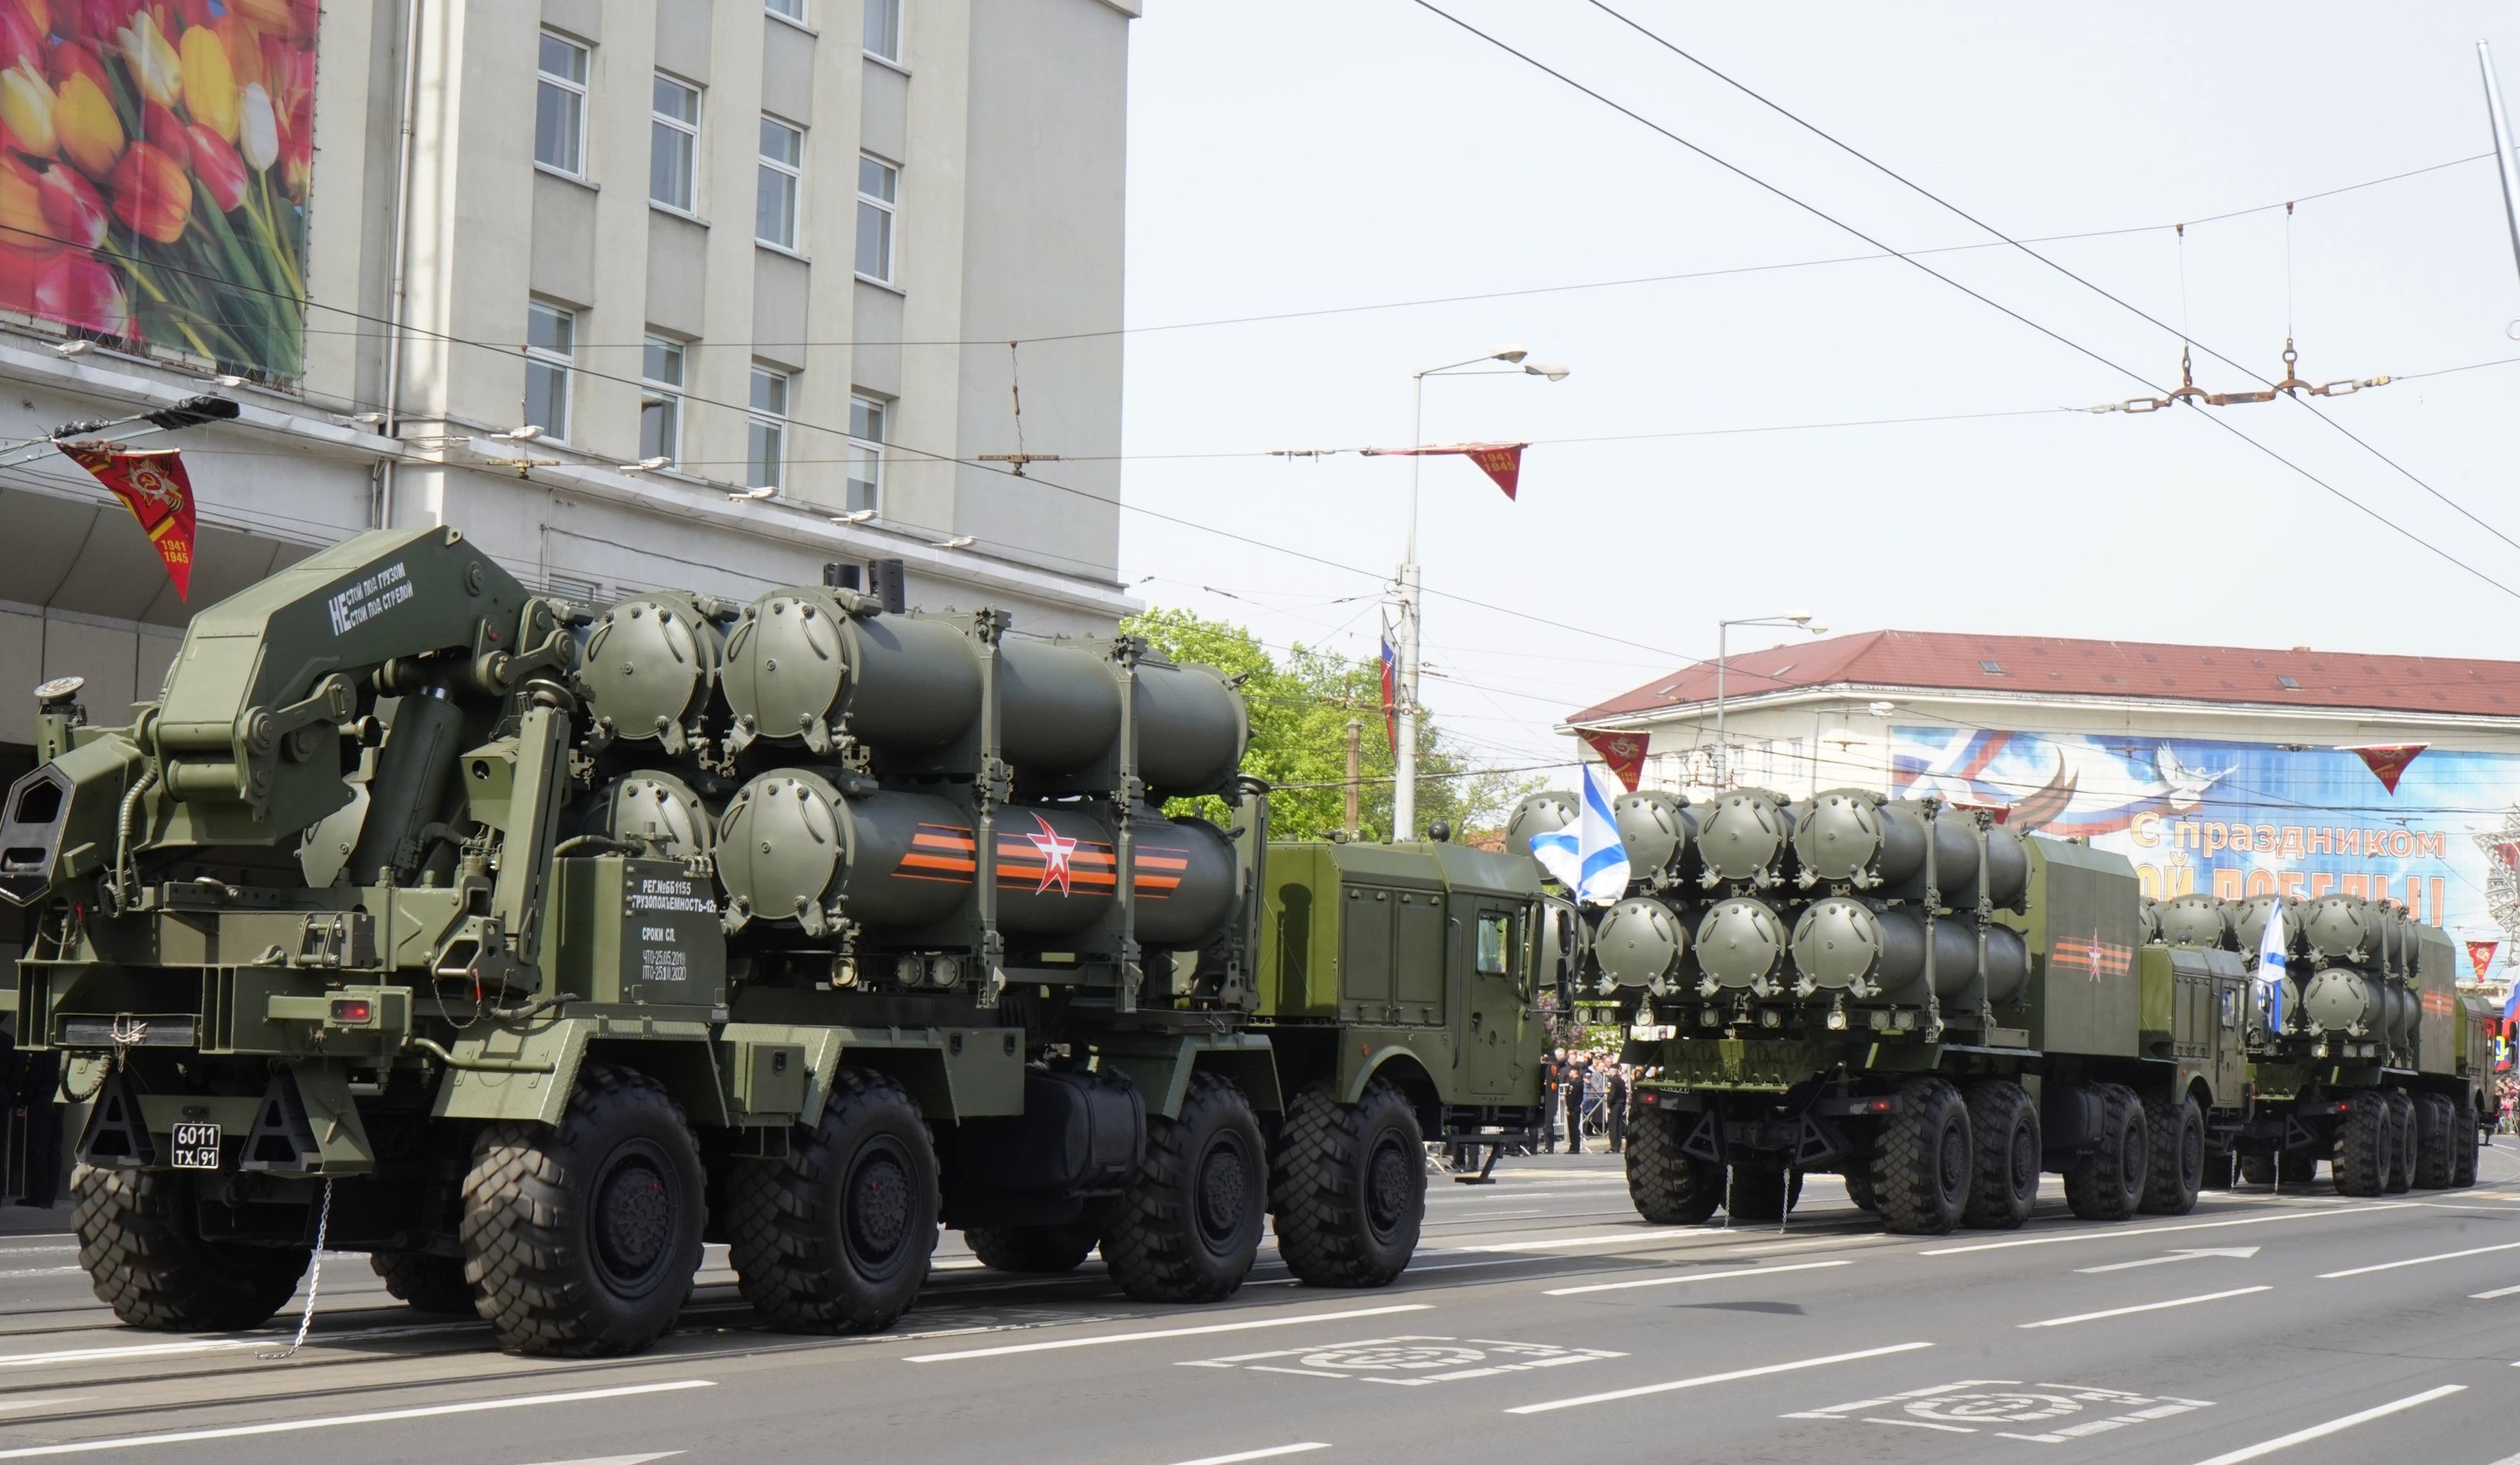 Пусковая установка берегового ракетного комплекса "Бал" на военном параде в Калининграде